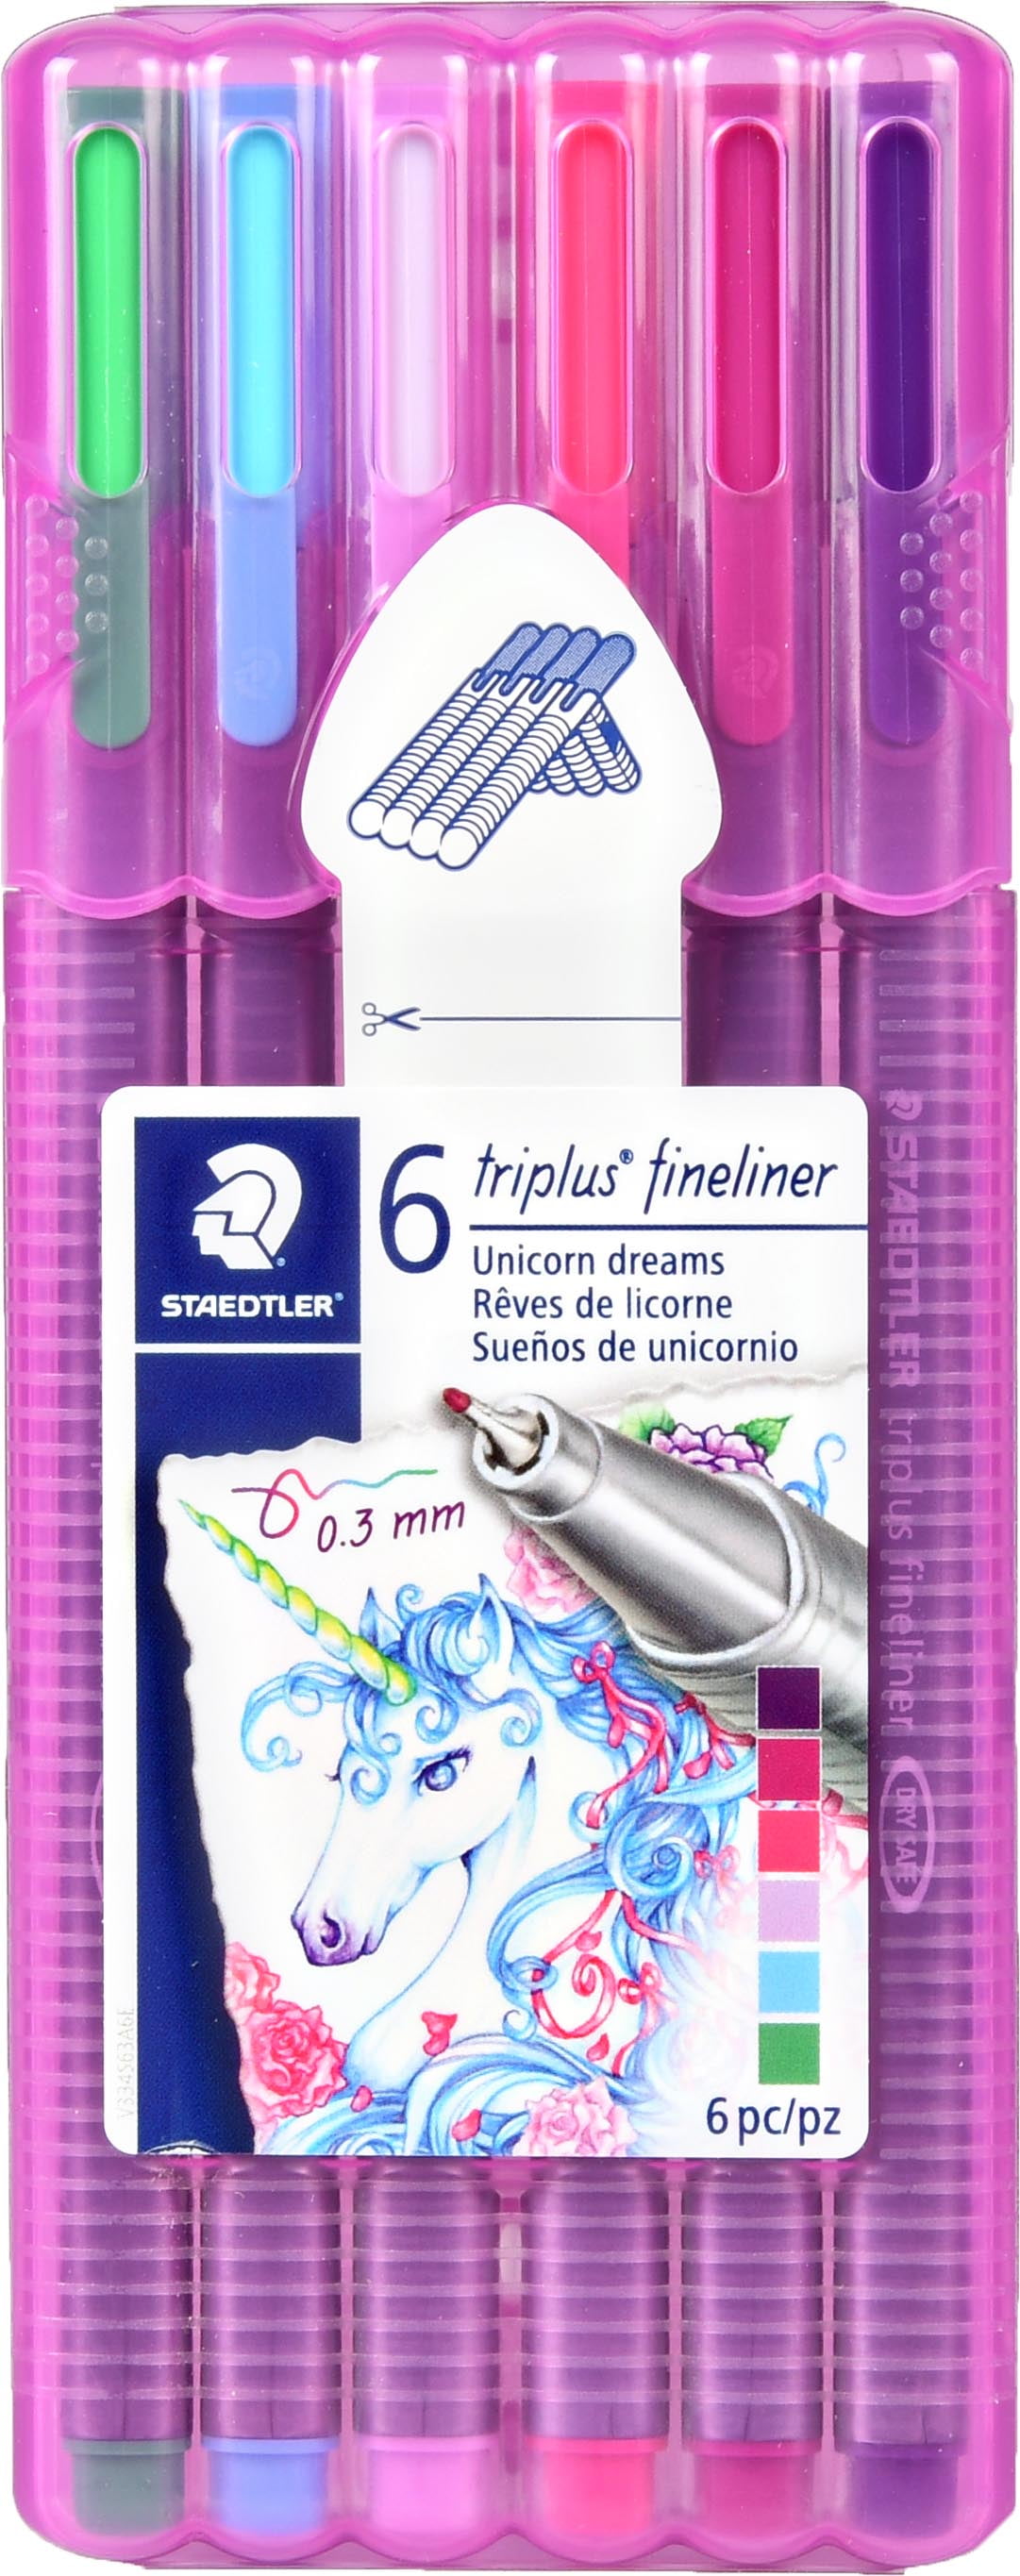 6 Unicorn Dreams Pencils With Eraser